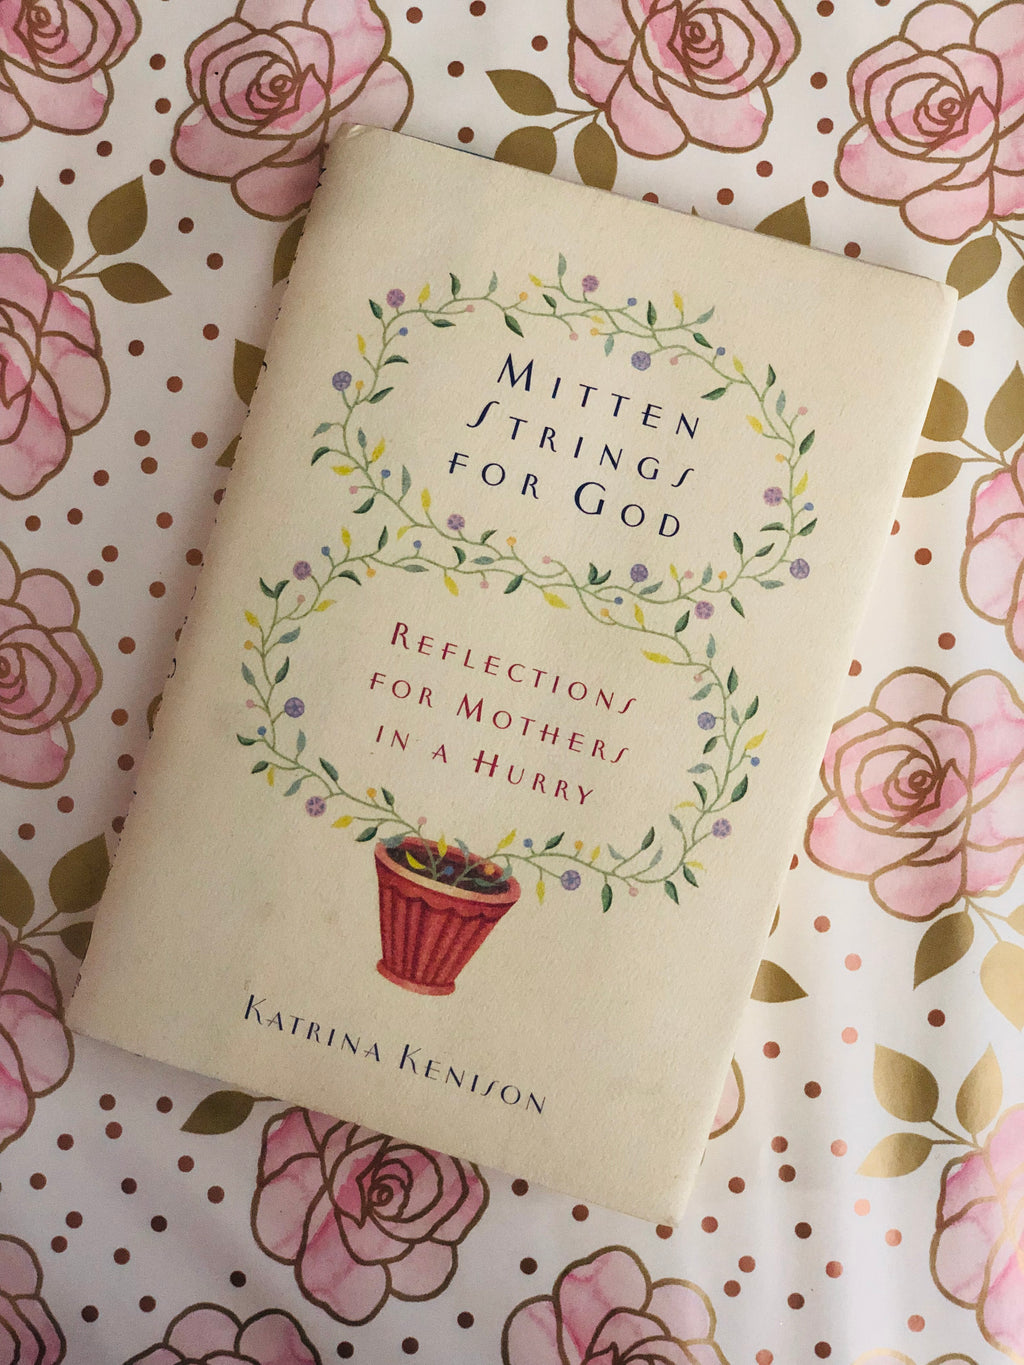 Mitten Strings For God- By Katrina Kenison